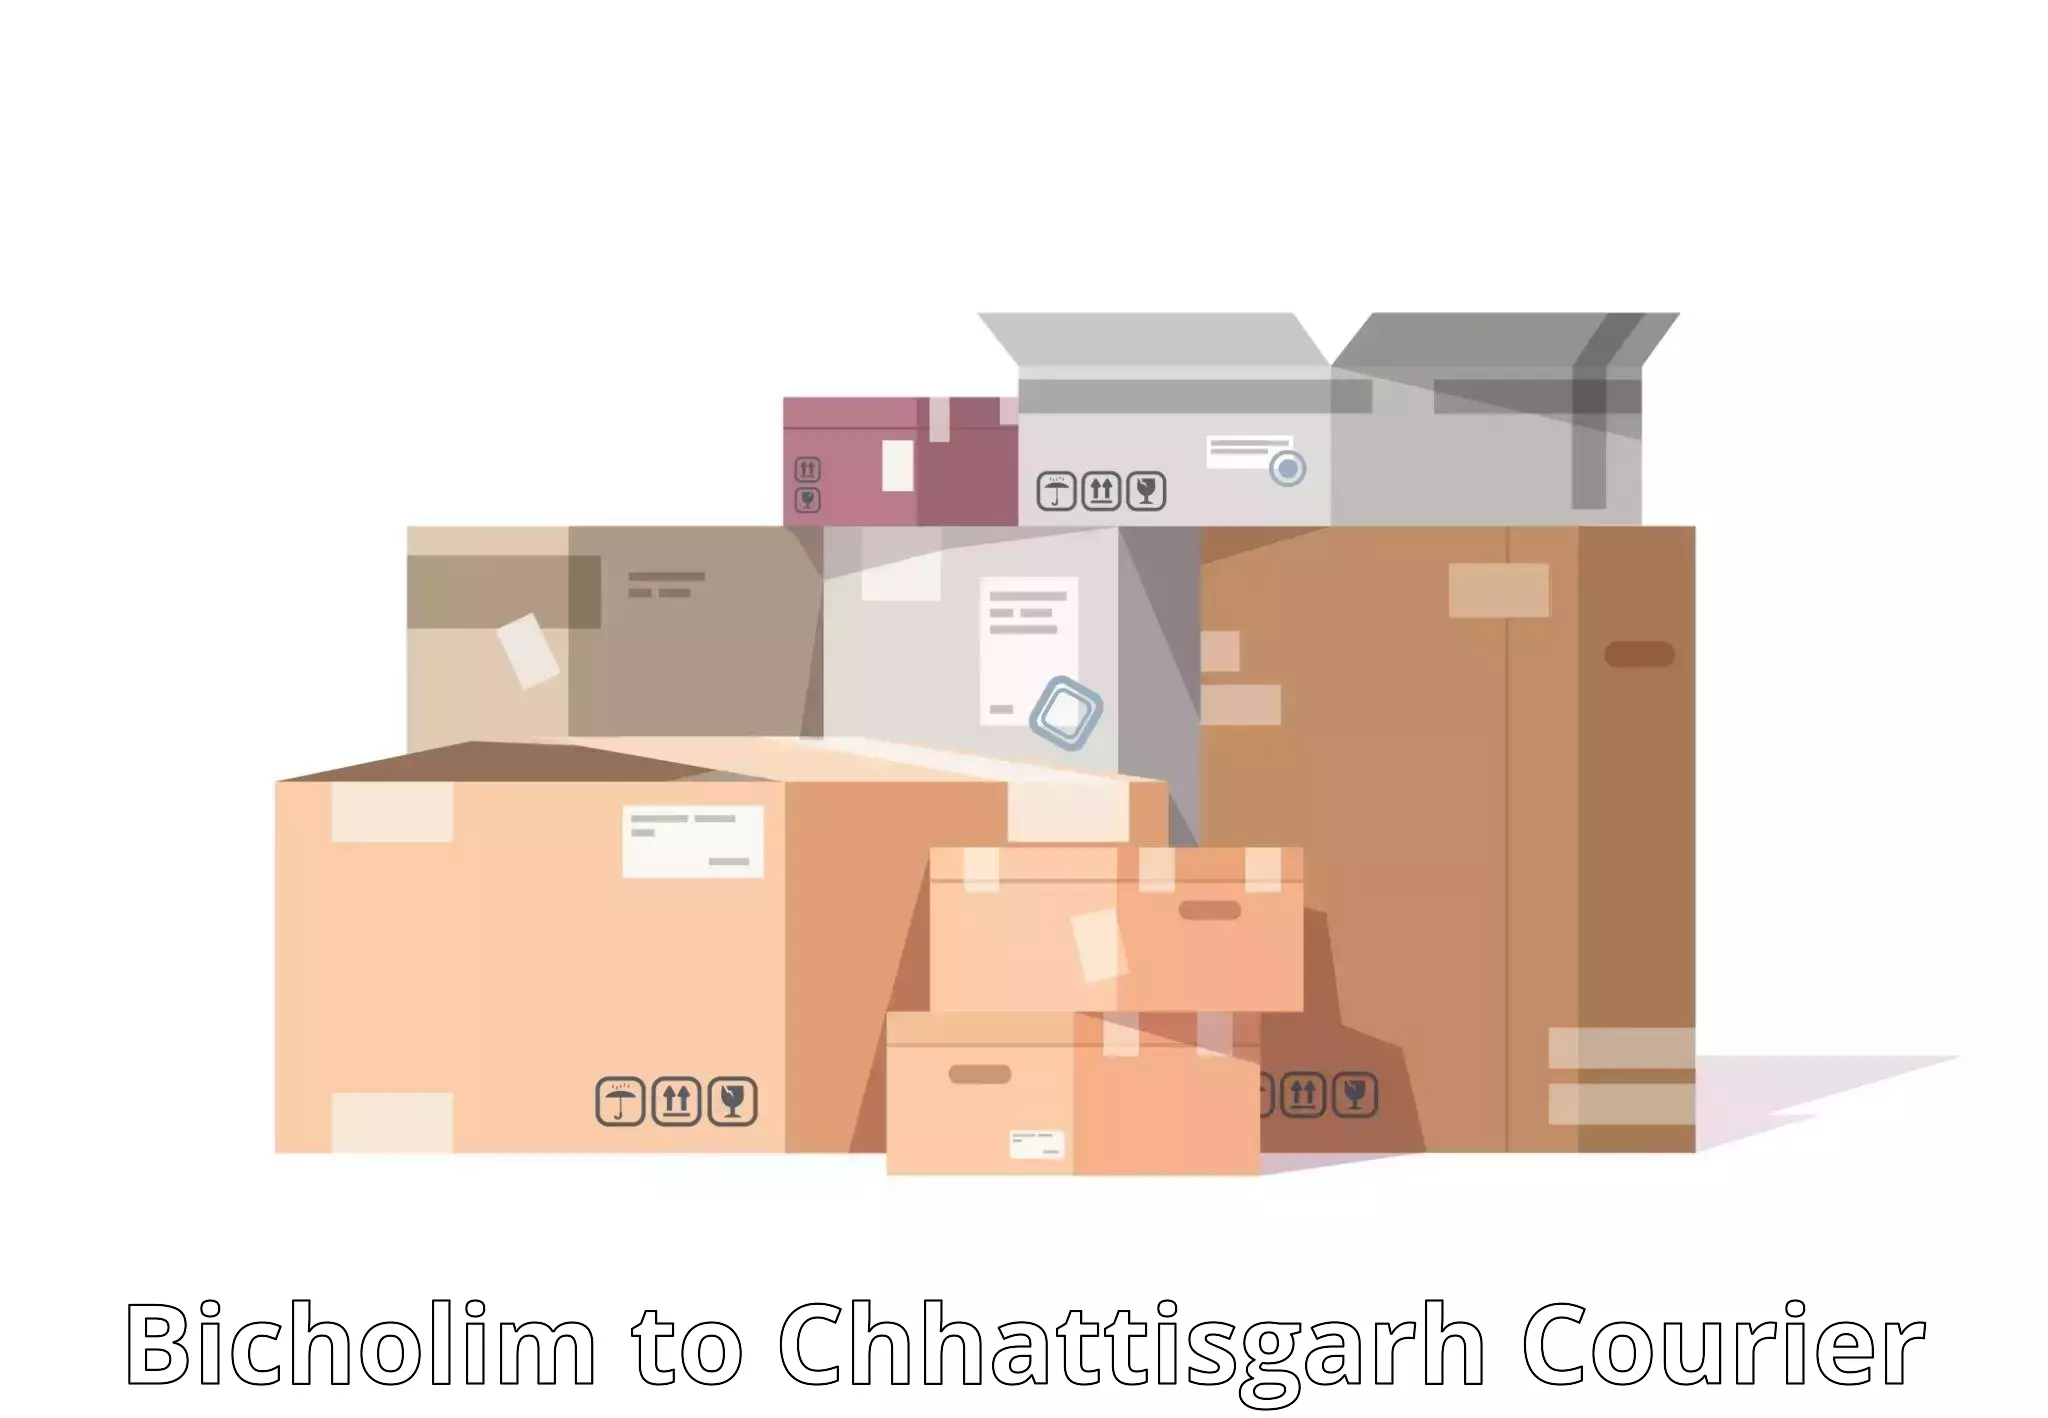 Urban courier service Bicholim to Bijapur Chhattisgarh